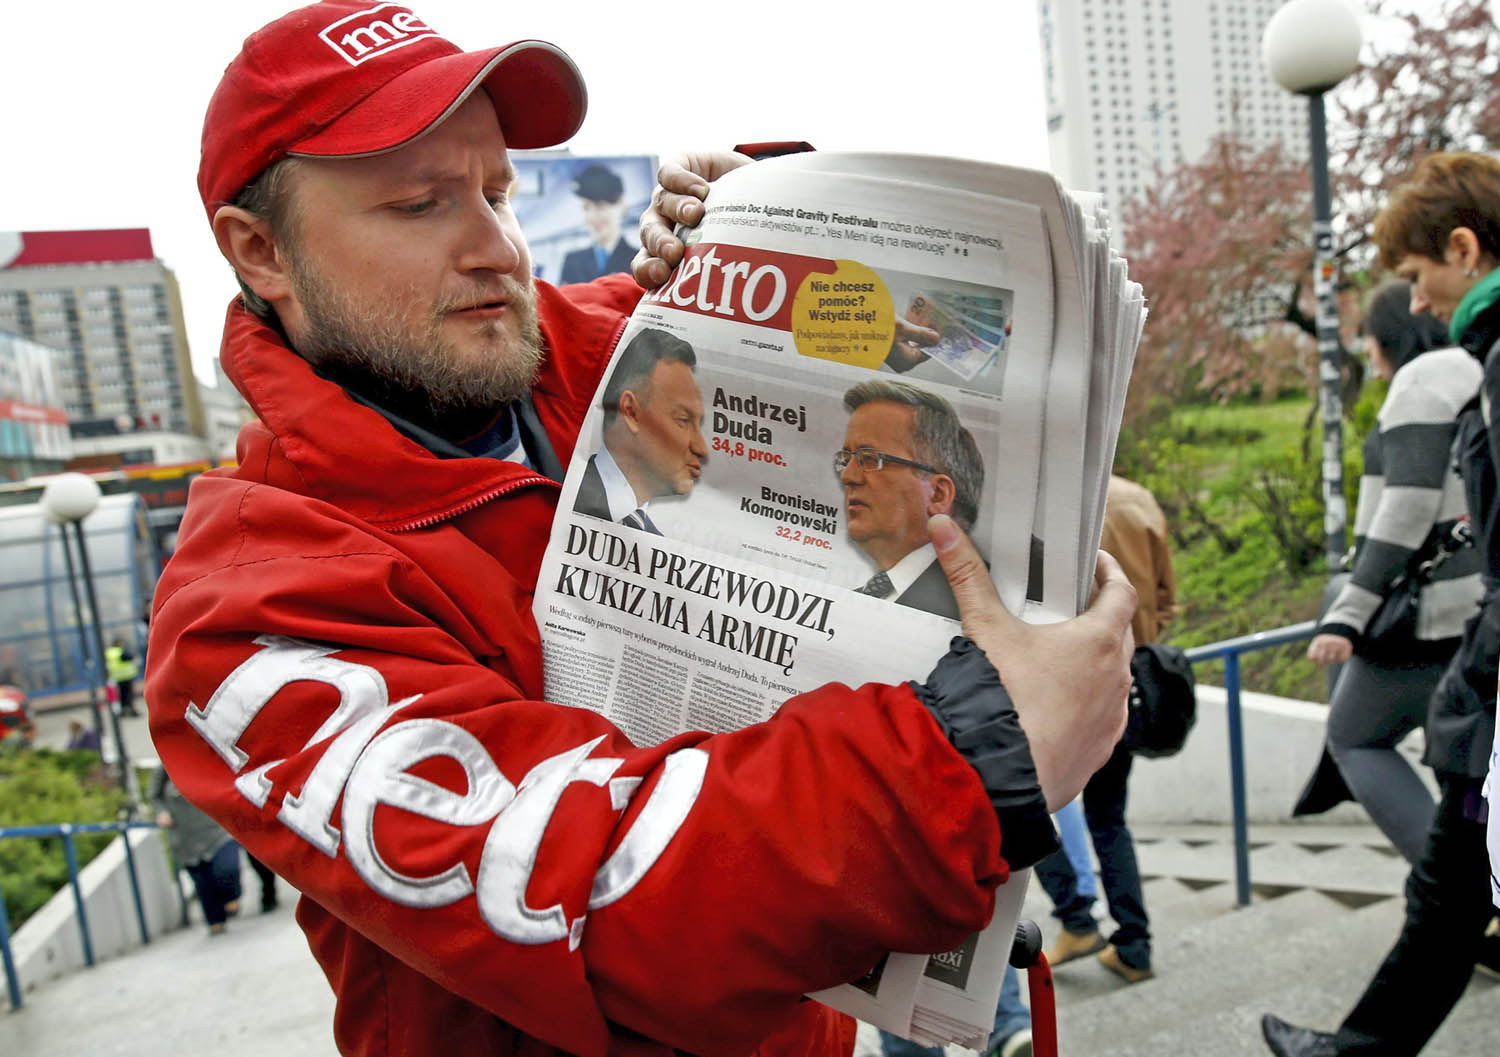 Andrzej Duda és Bronislaw Komorowski: a címlapra kerültek